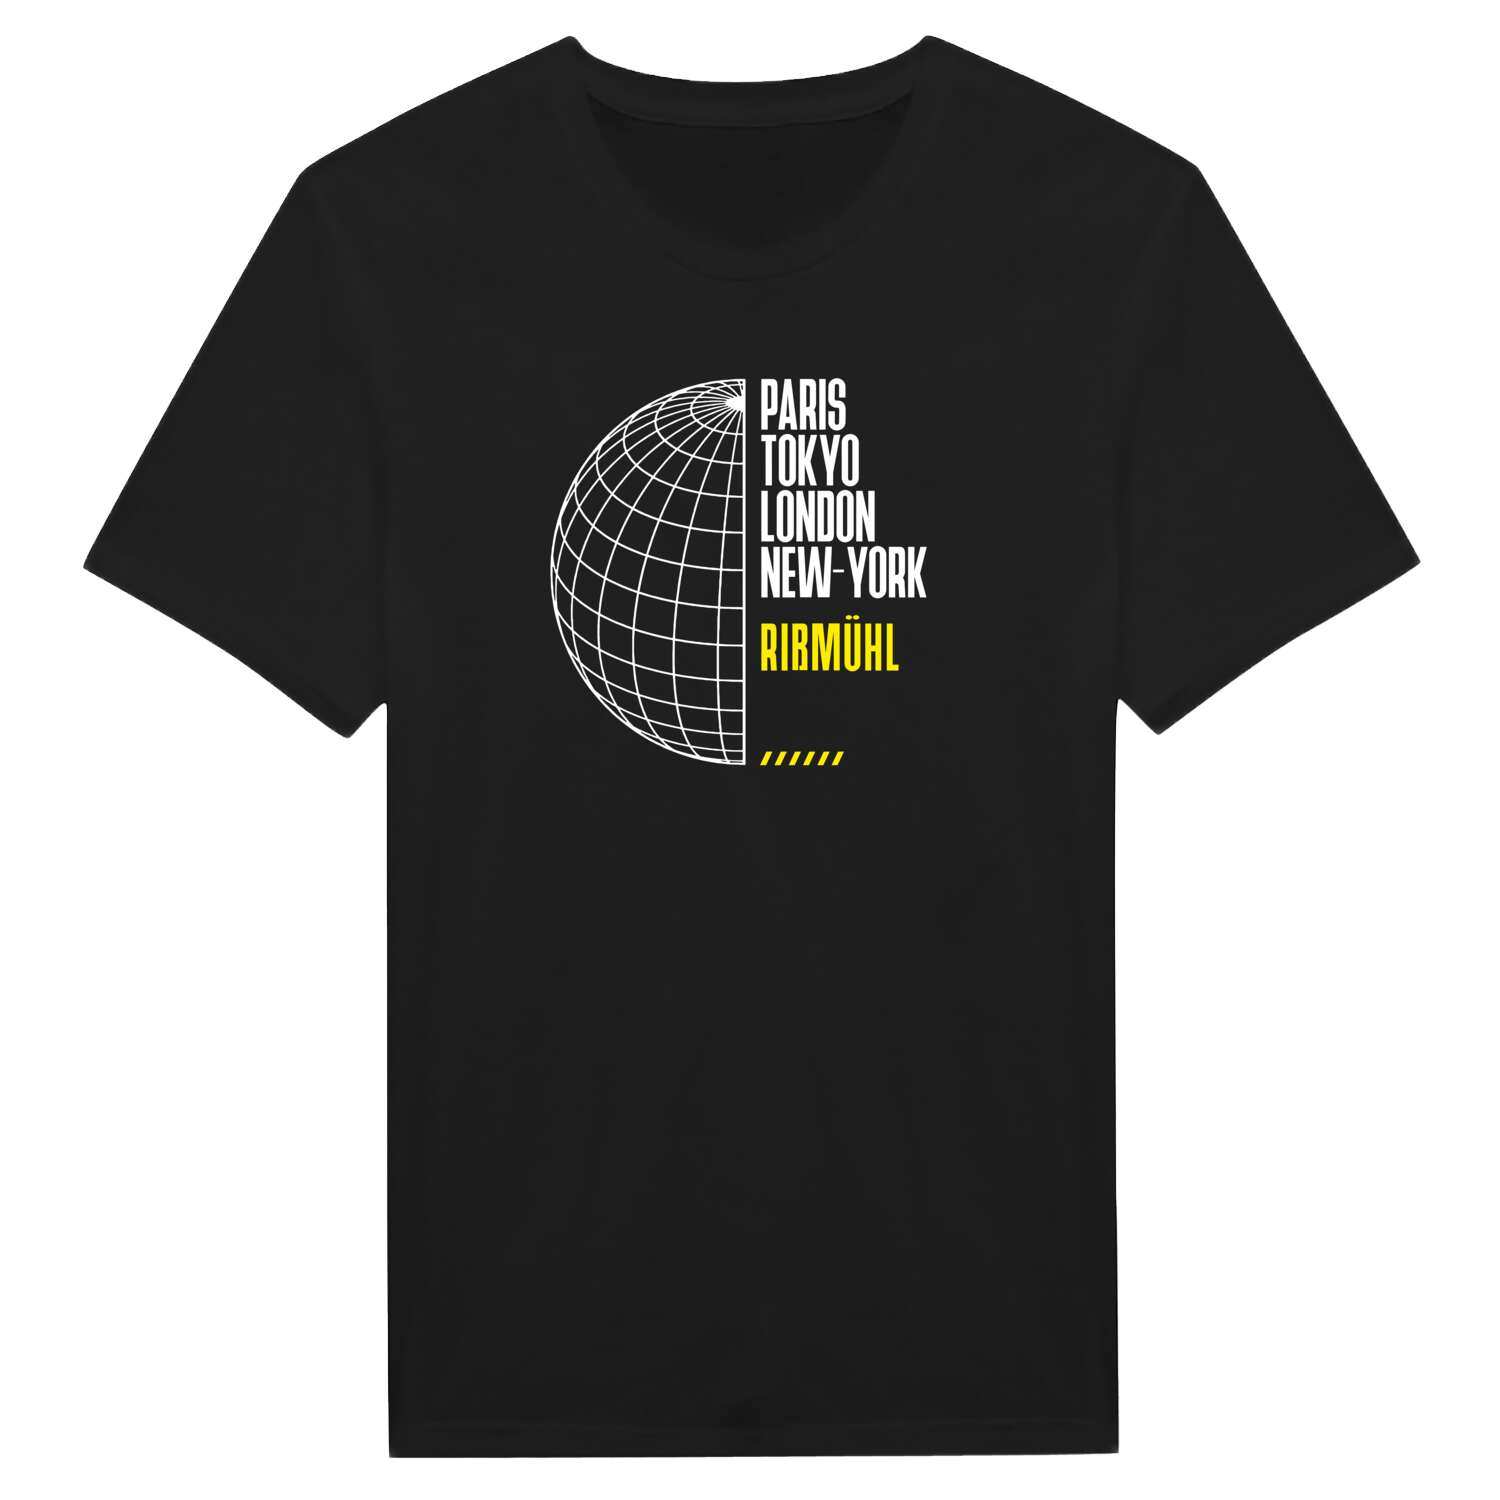 Rißmühl T-Shirt »Paris Tokyo London«